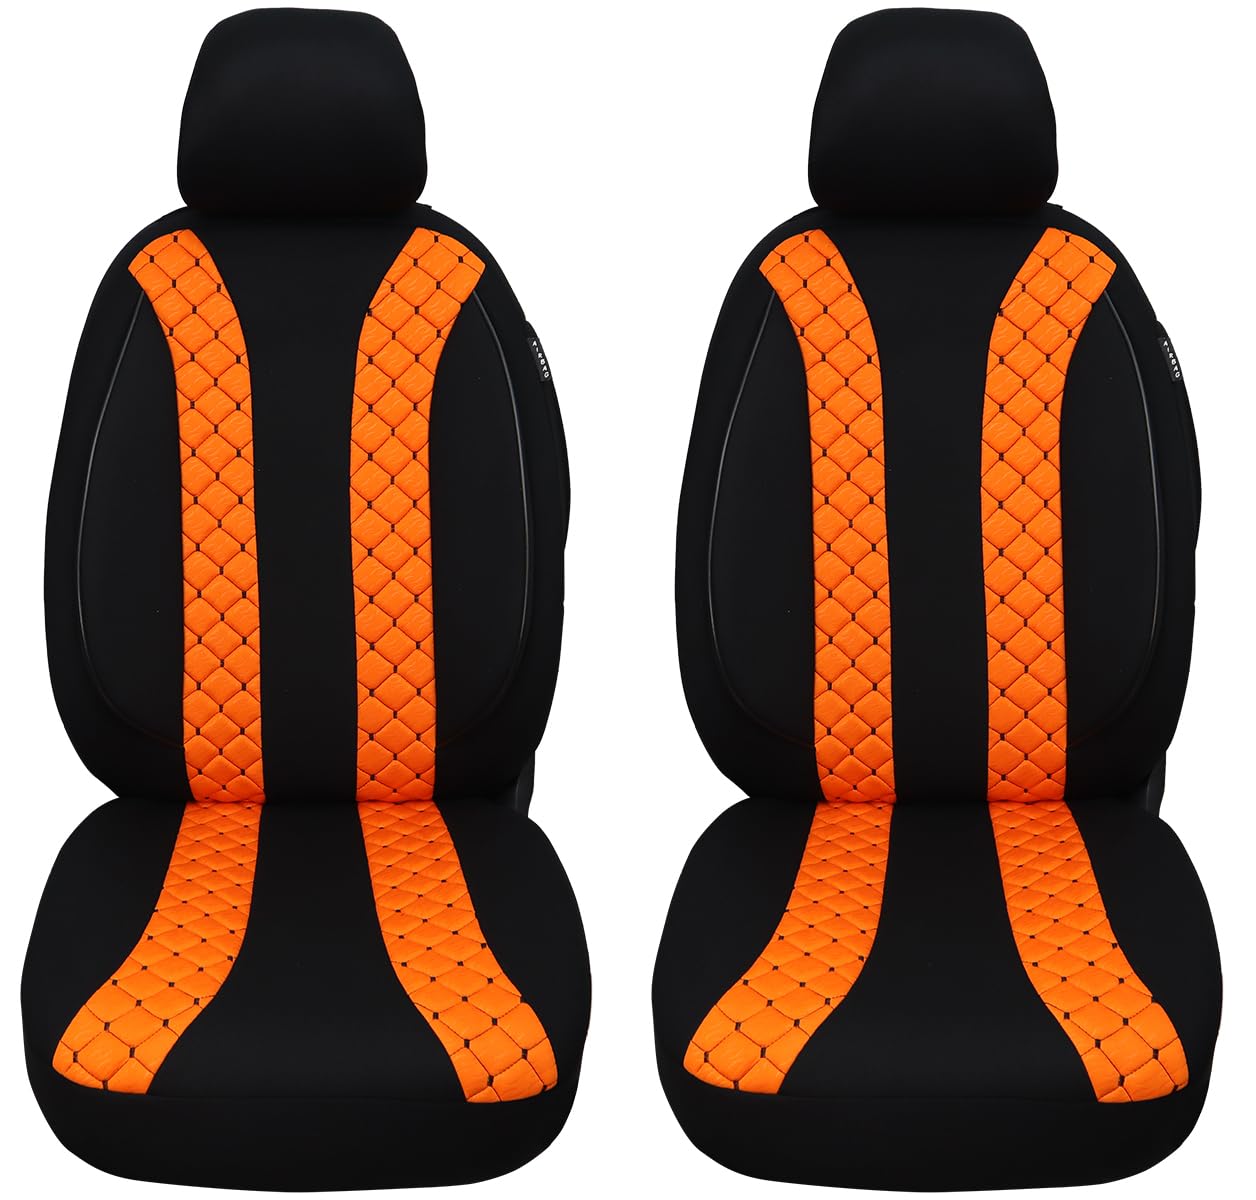 Maß Sitzbezüge für Auto Sitze kompatibel mit BMW X1 F48 2015 Fahrer und Beifahrer Schonbezüge Sitzschoner Sitzbezug FB:N305 (Schwarz/Orange) von BREMER SITZBEZÜGE